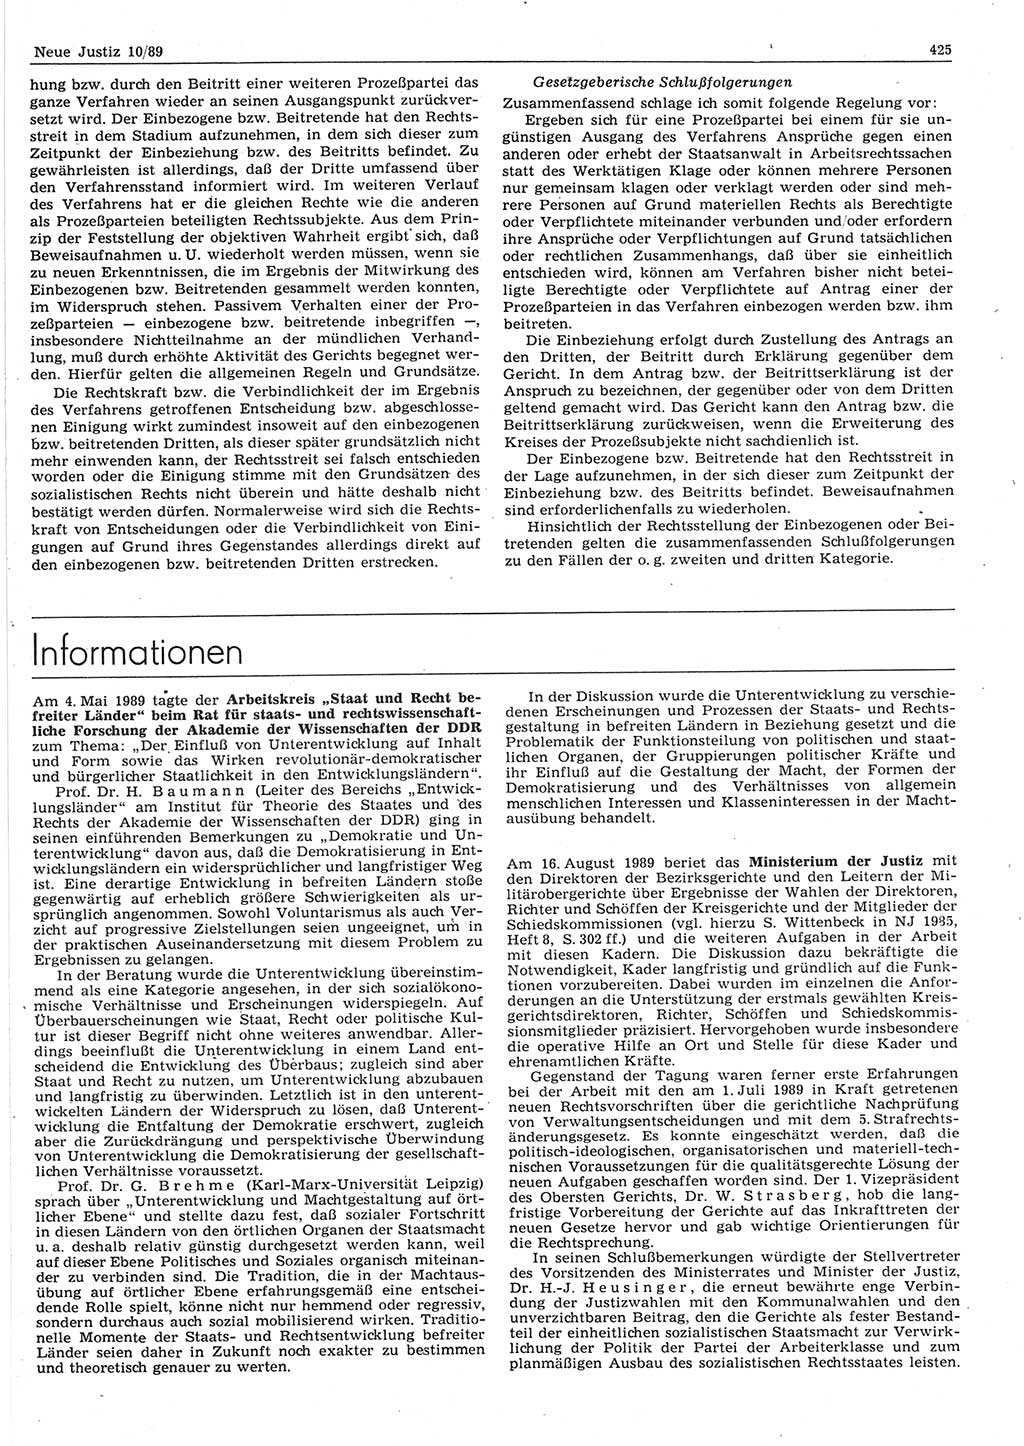 Neue Justiz (NJ), Zeitschrift für sozialistisches Recht und Gesetzlichkeit [Deutsche Demokratische Republik (DDR)], 43. Jahrgang 1989, Seite 425 (NJ DDR 1989, S. 425)